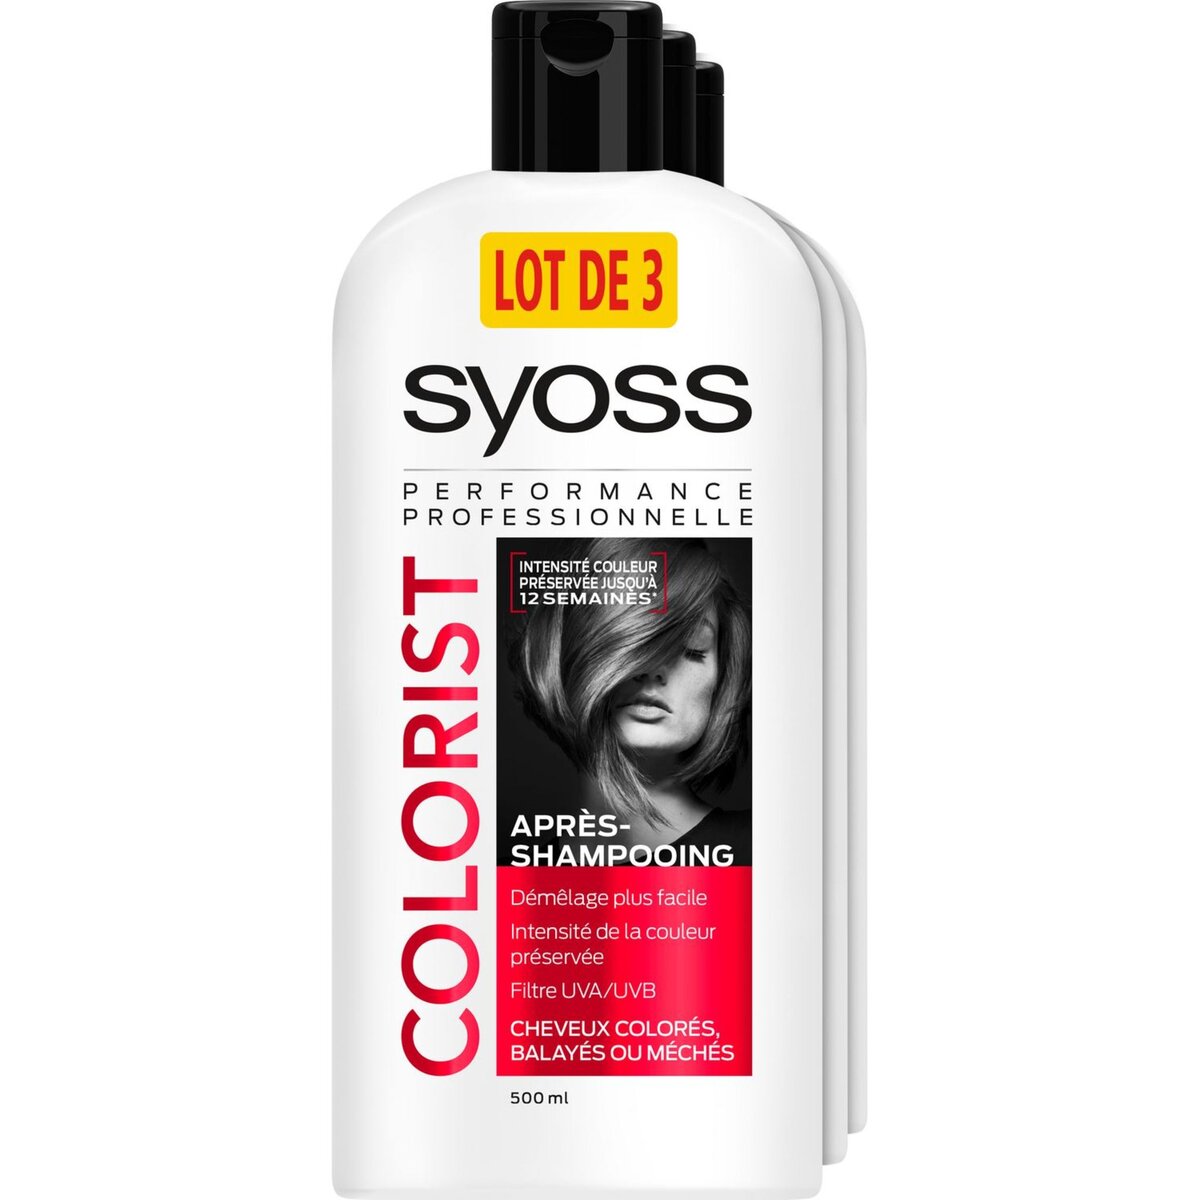 SYOSS Colorist après-shampoing cheveux colorés, balayés, méchés 500ml